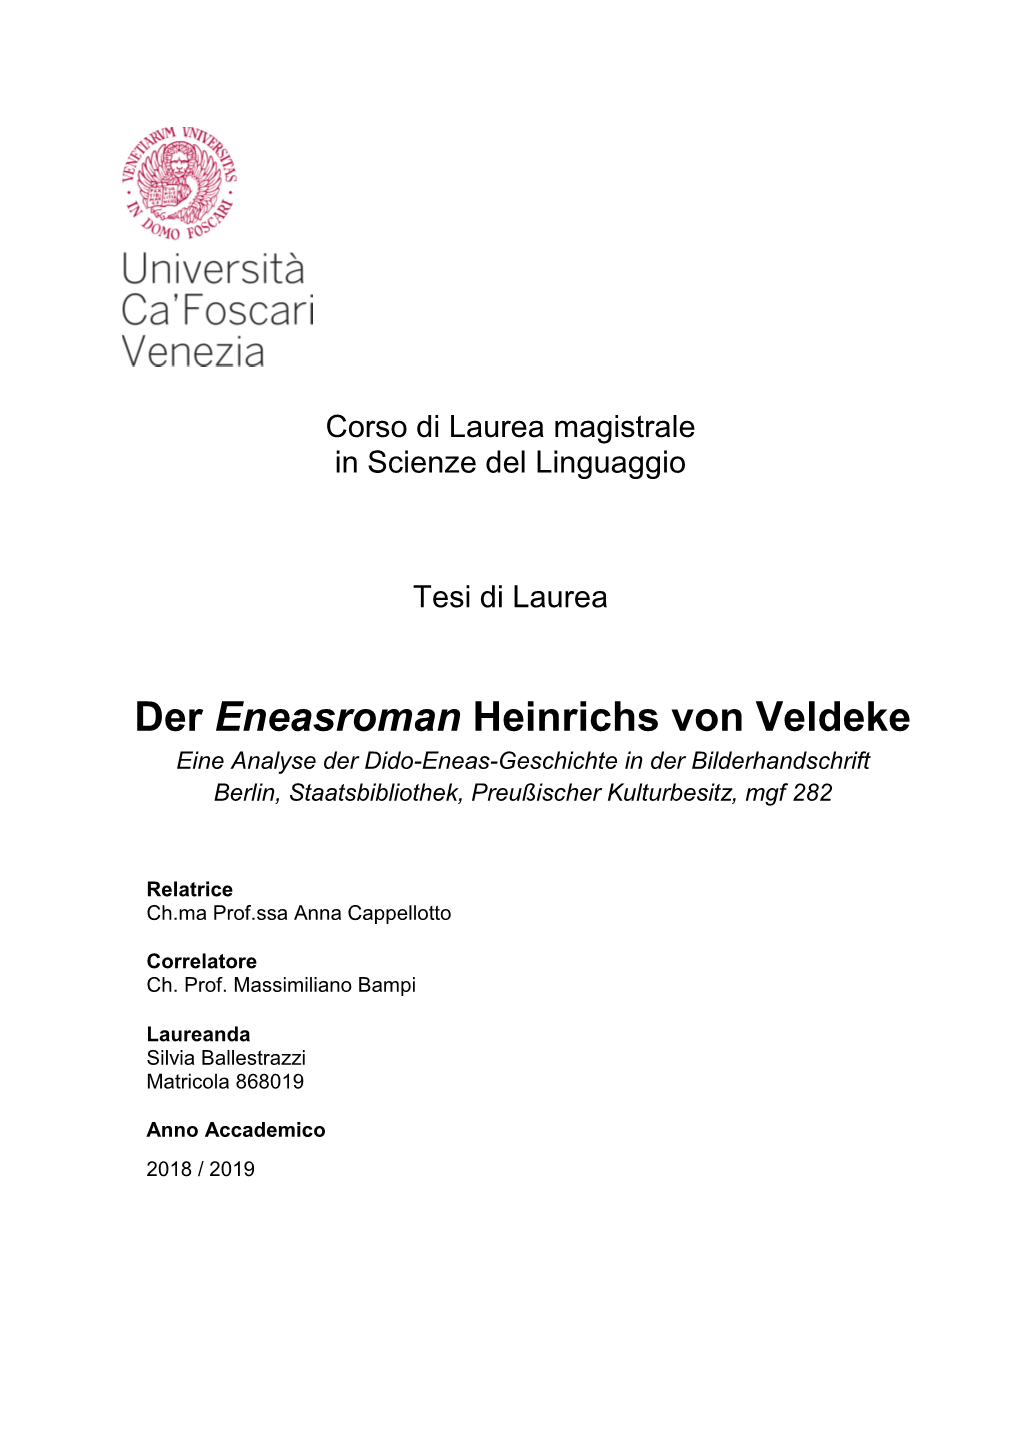 Der Eneasroman Heinrichs Von Veldeke Eine Analyse Der Dido-Eneas-Geschichte in Der Bilderhandschrift Berlin, Staatsbibliothek, Preußischer Kulturbesitz, Mgf 282